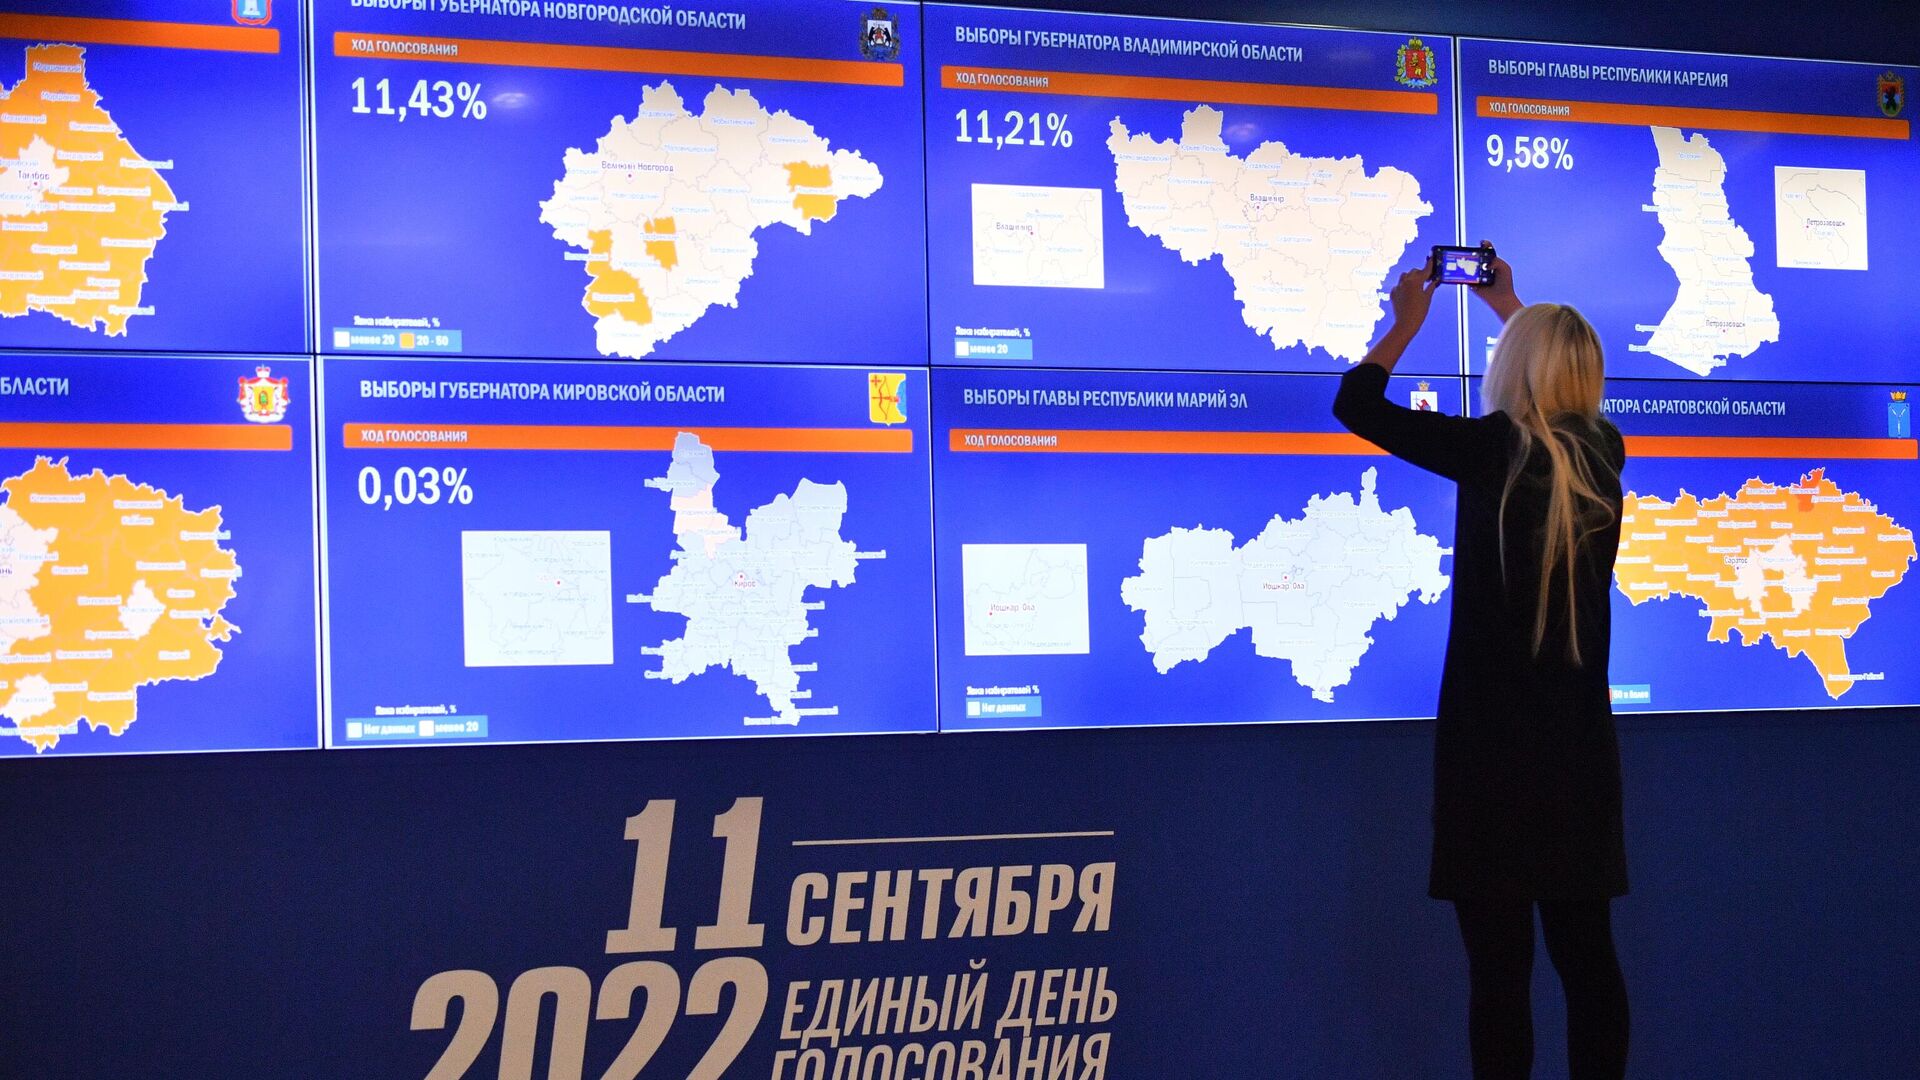 Количество проголосовавших в москве. Итоги выборов в России 2022. Электронное голосование 2022. Результаты выборов 2022. Предварительные итоги выборов.